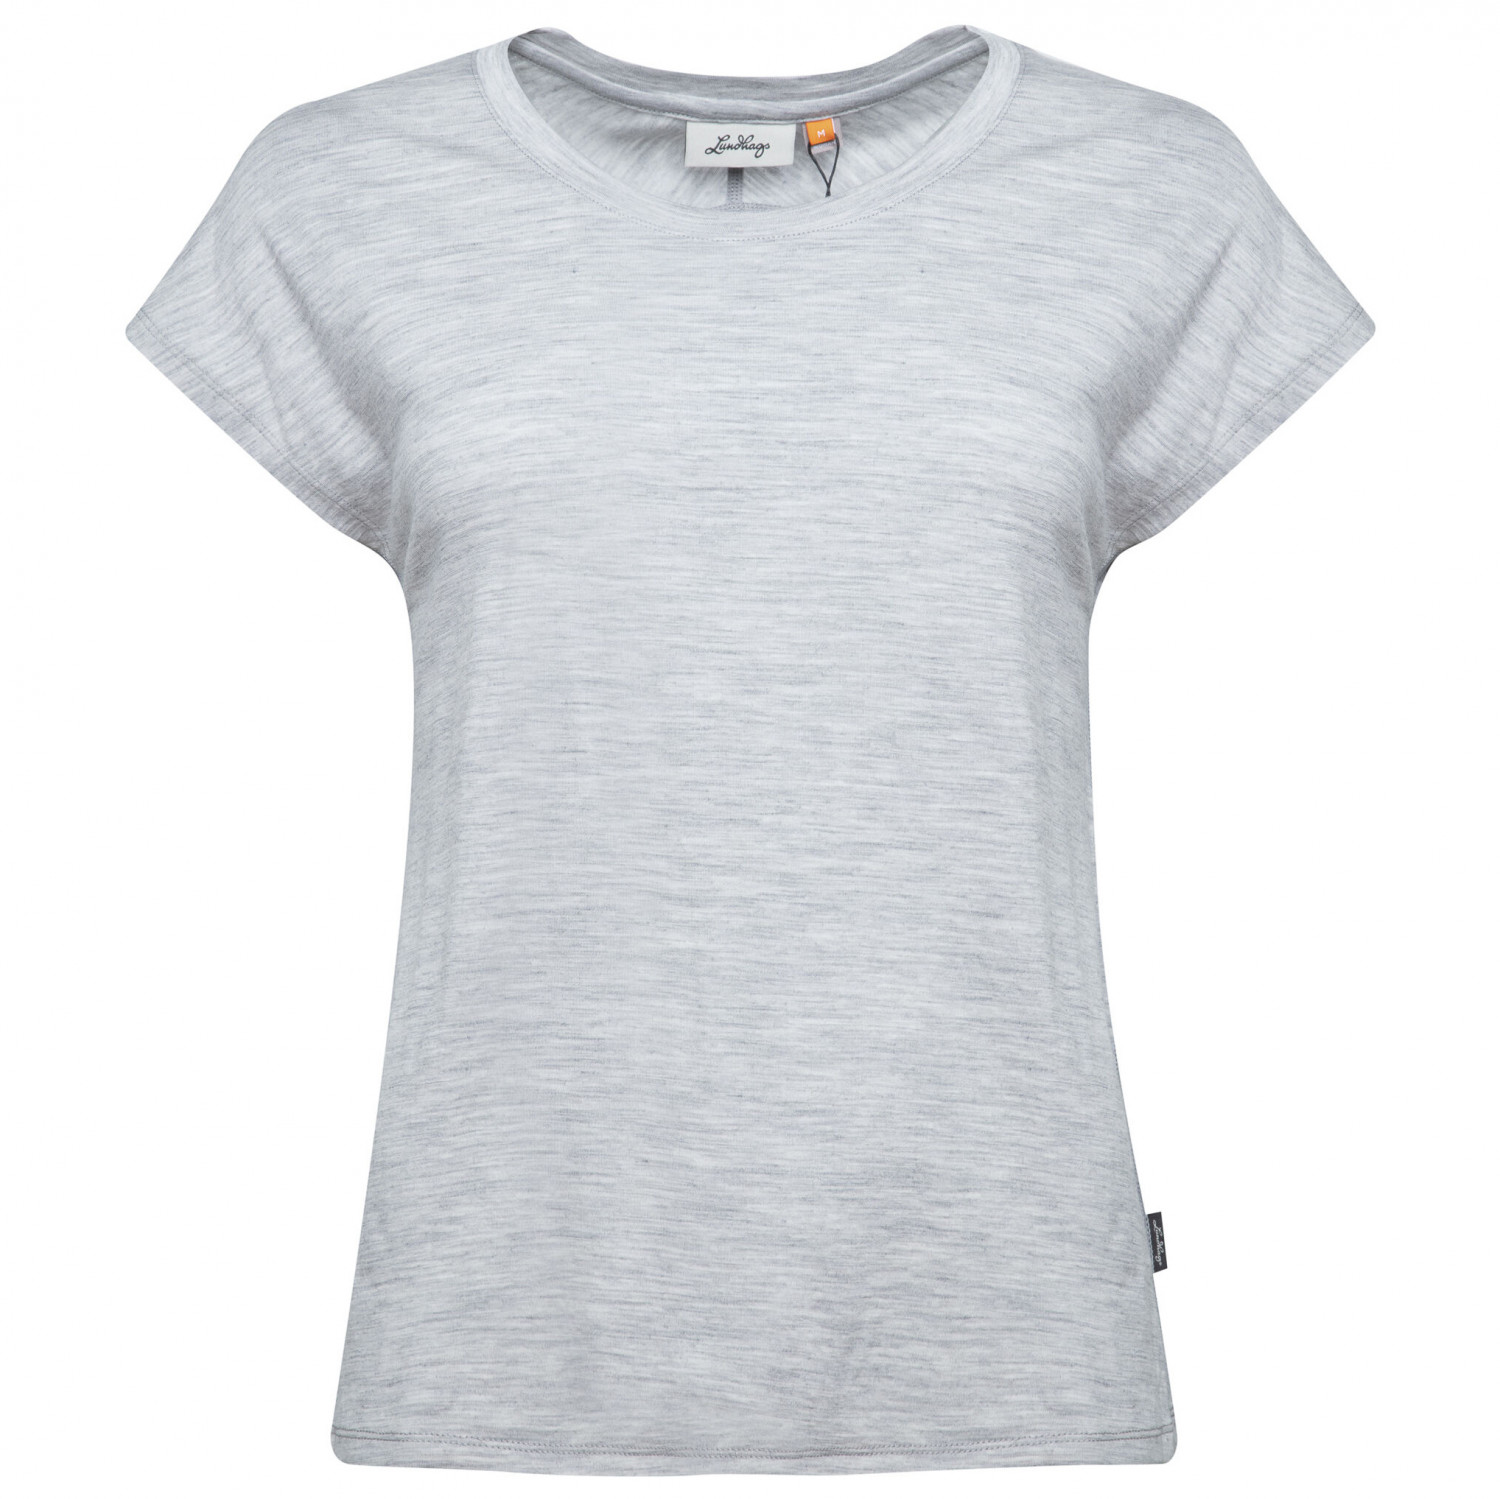 Рубашка из мериноса Lundhags Women's Gimmer Merino Light Top, светло серый